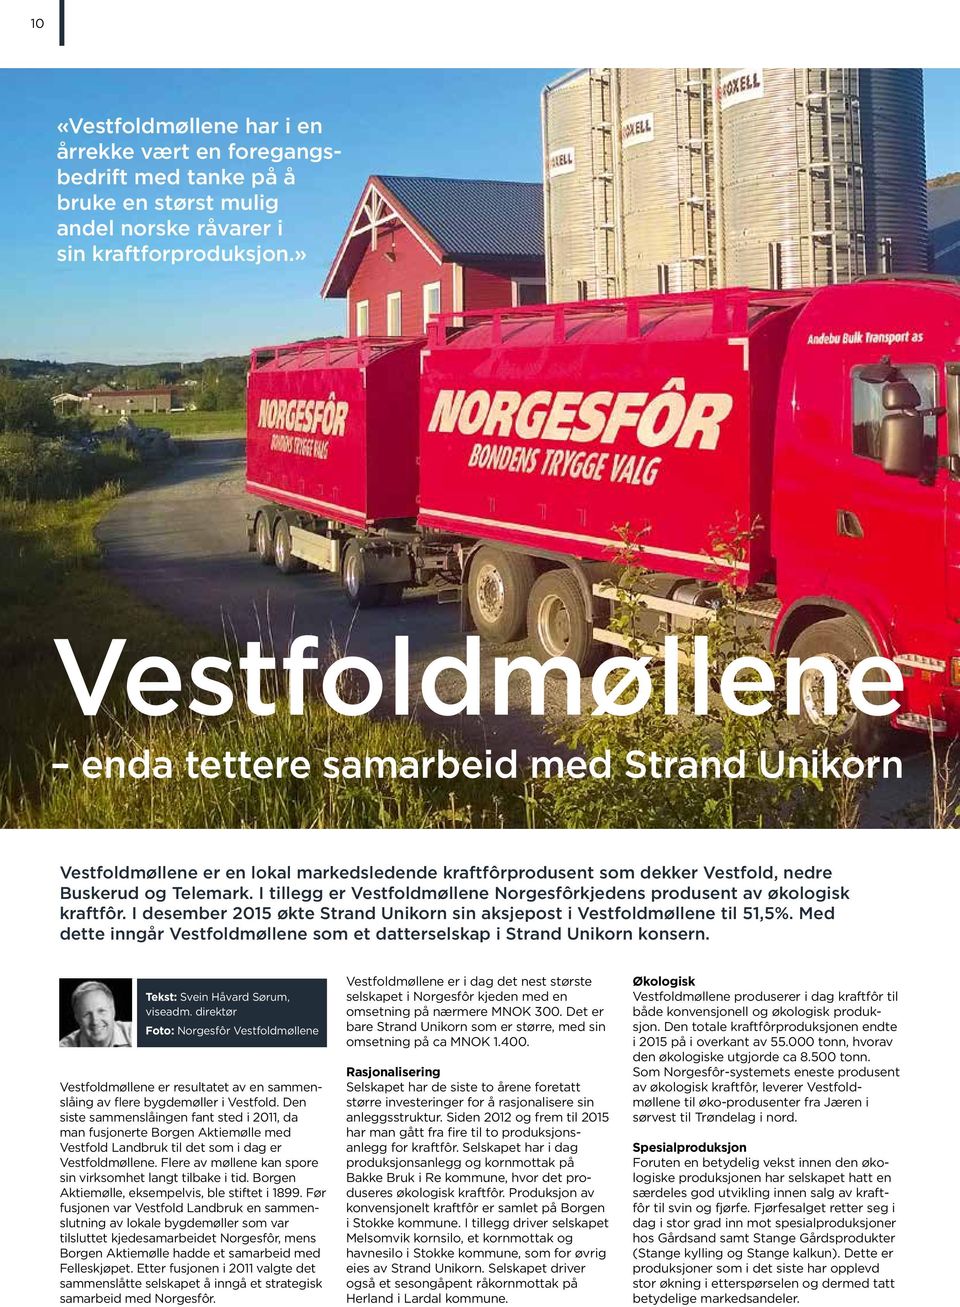 I tillegg er Vestfoldmøllene Norgesfôrkjedens produsent av økologisk kraftfôr. I des ember 2015 økte Strand Unikorn sin aksjepost i Vestfoldmøllene til 51,5%.